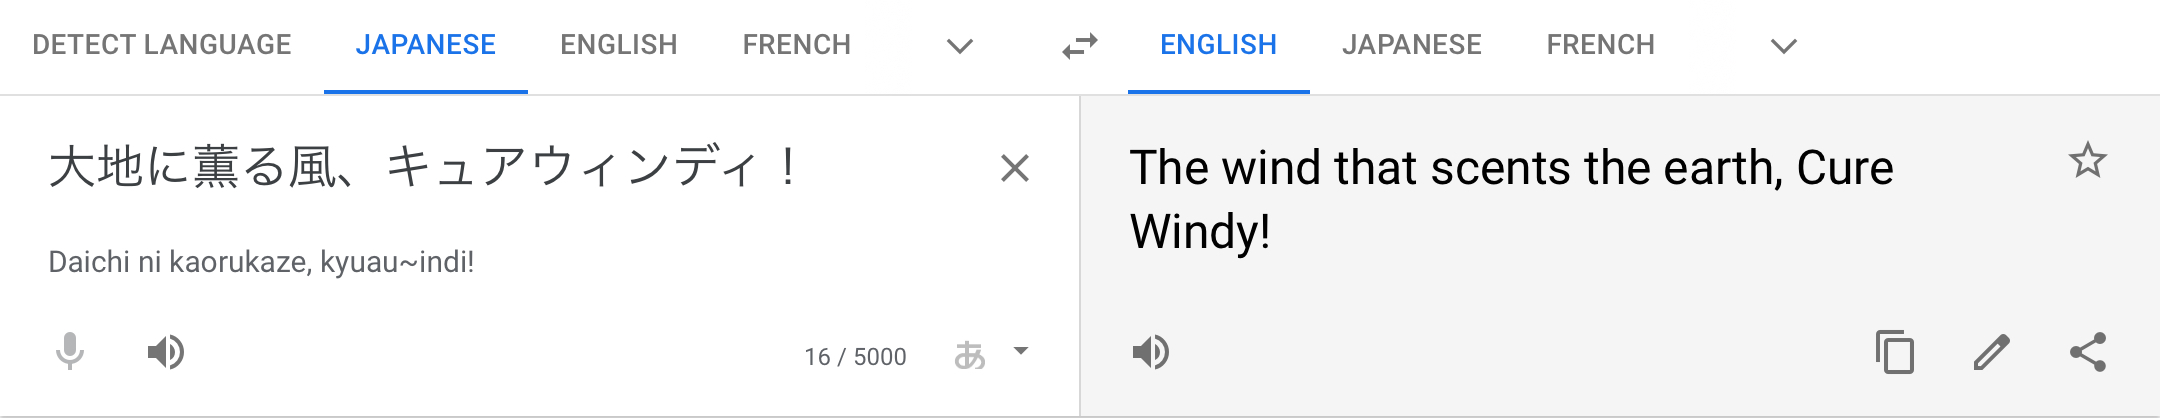 google translate being weird 2 fandom